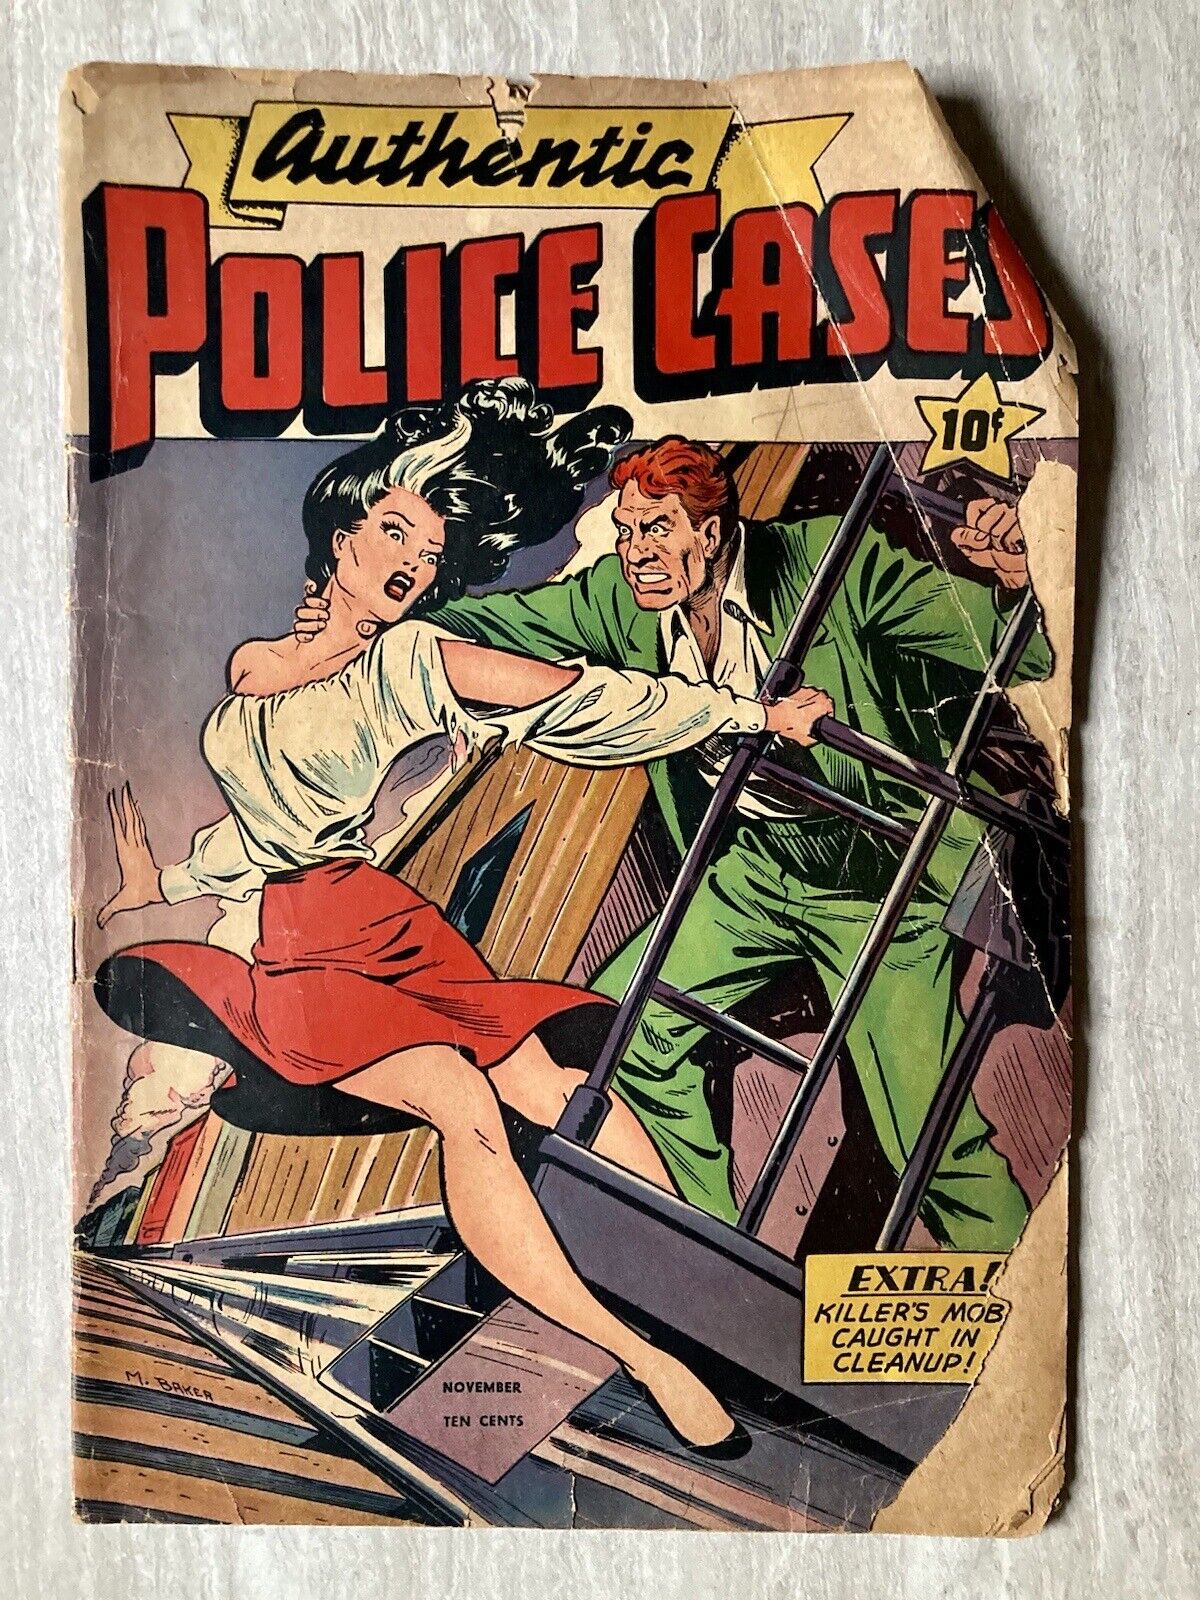 Authentic Police Cases #6 (St. John 1948) Iconic Matt Baker Cover - Low Grade